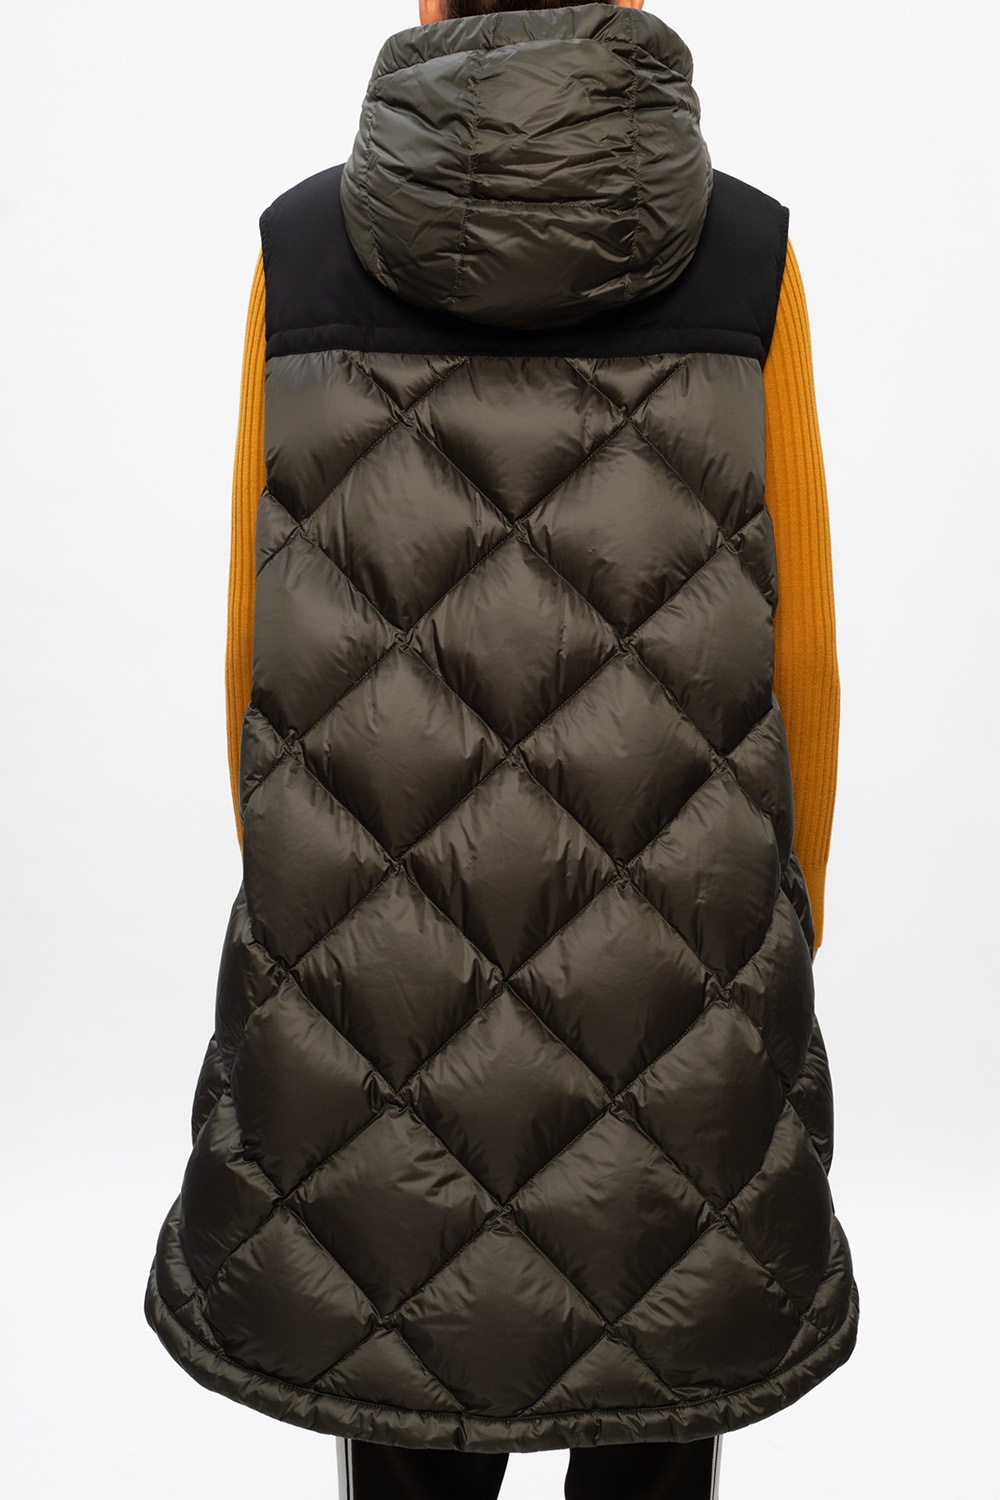 moncler bulletproof vest for sale